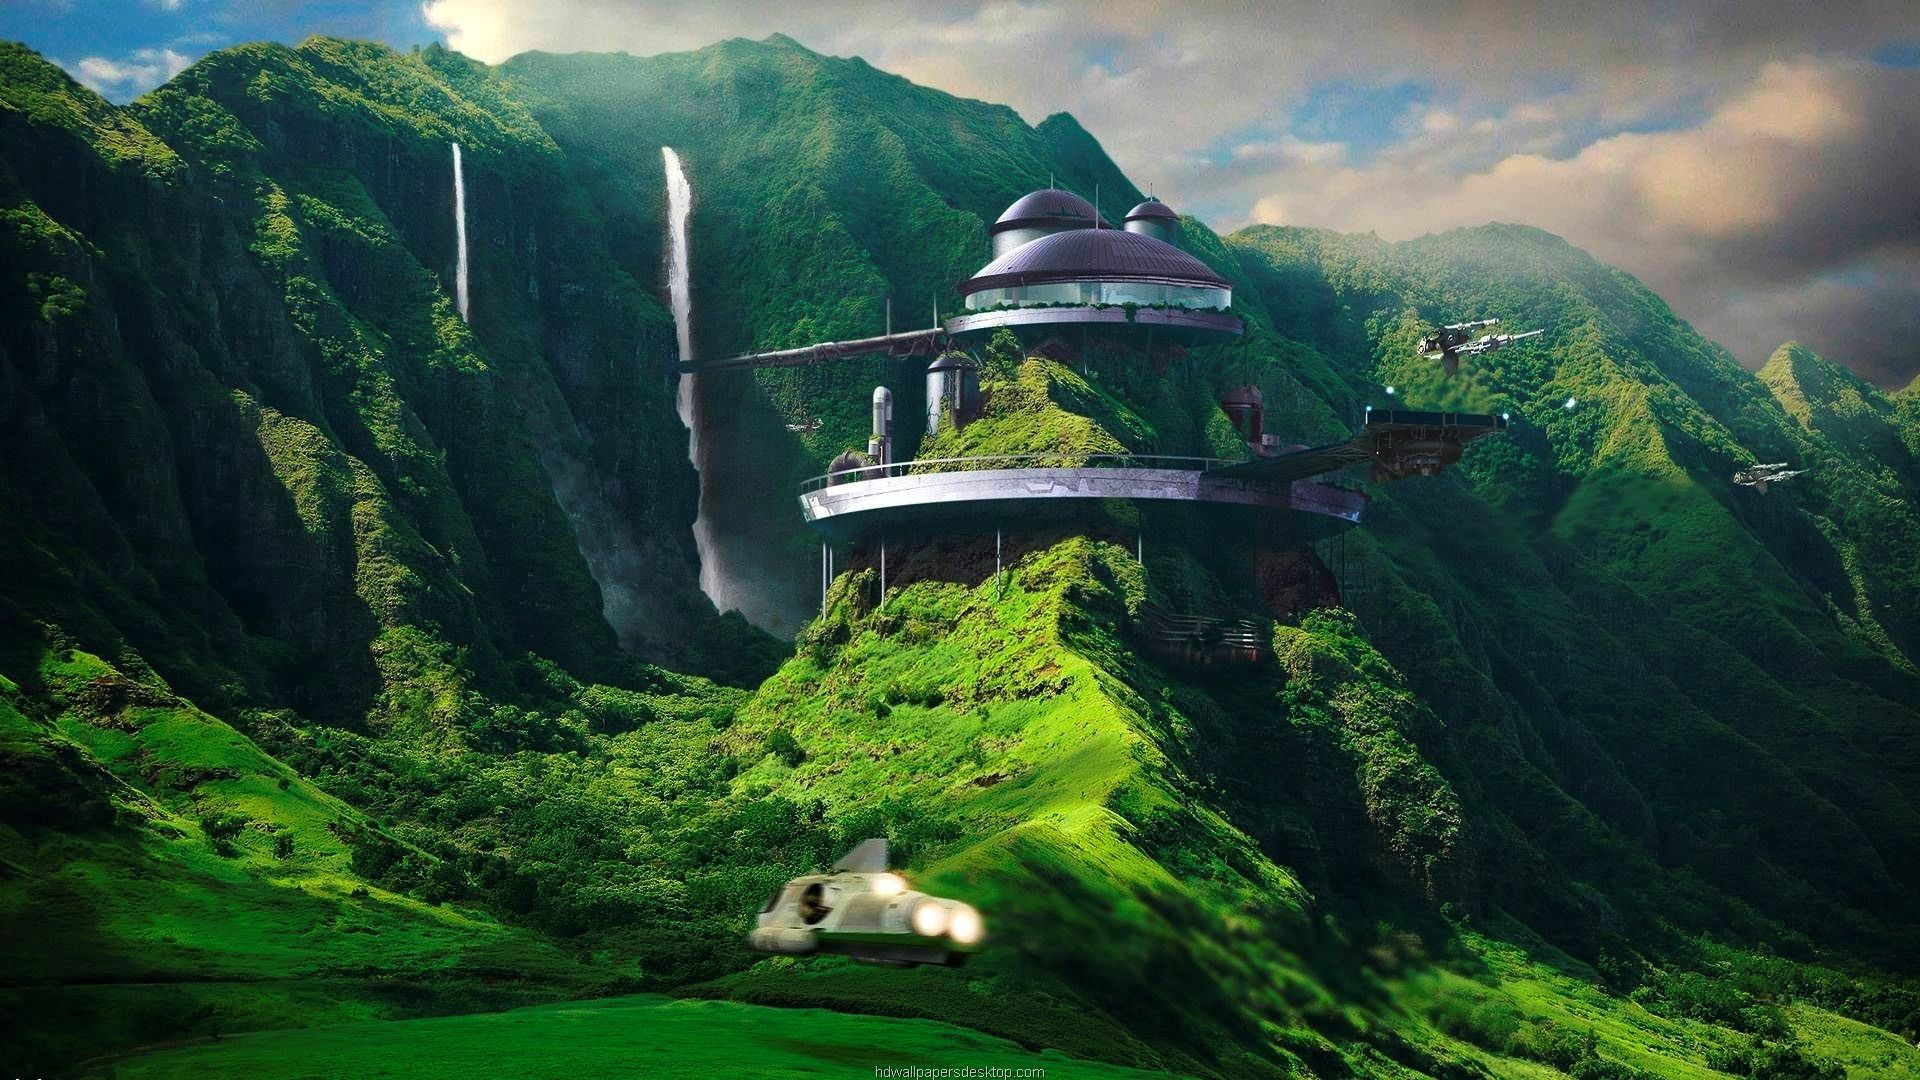 Sci Fi Landscape 2021 Hd Desktop Art Wallpapers